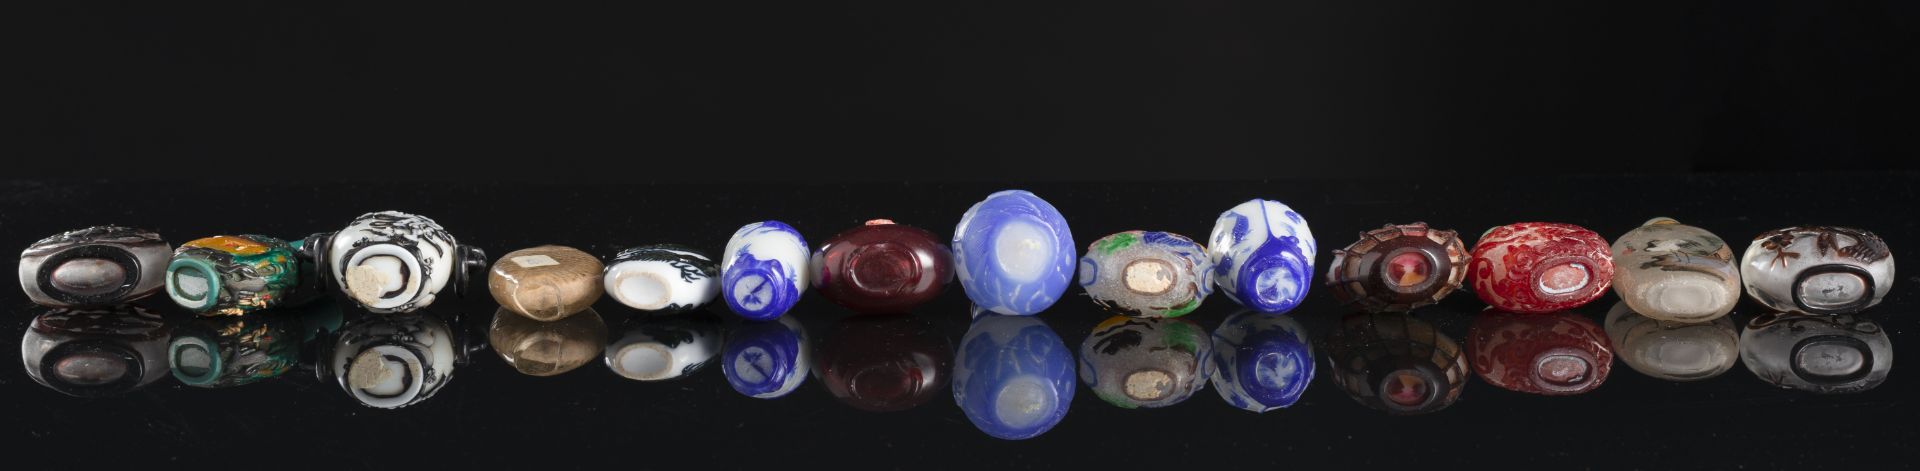 26 Snuffbottles u. a. aus Pekingglas mit Überfang und innenbemaltem Glas - Bild 4 aus 7